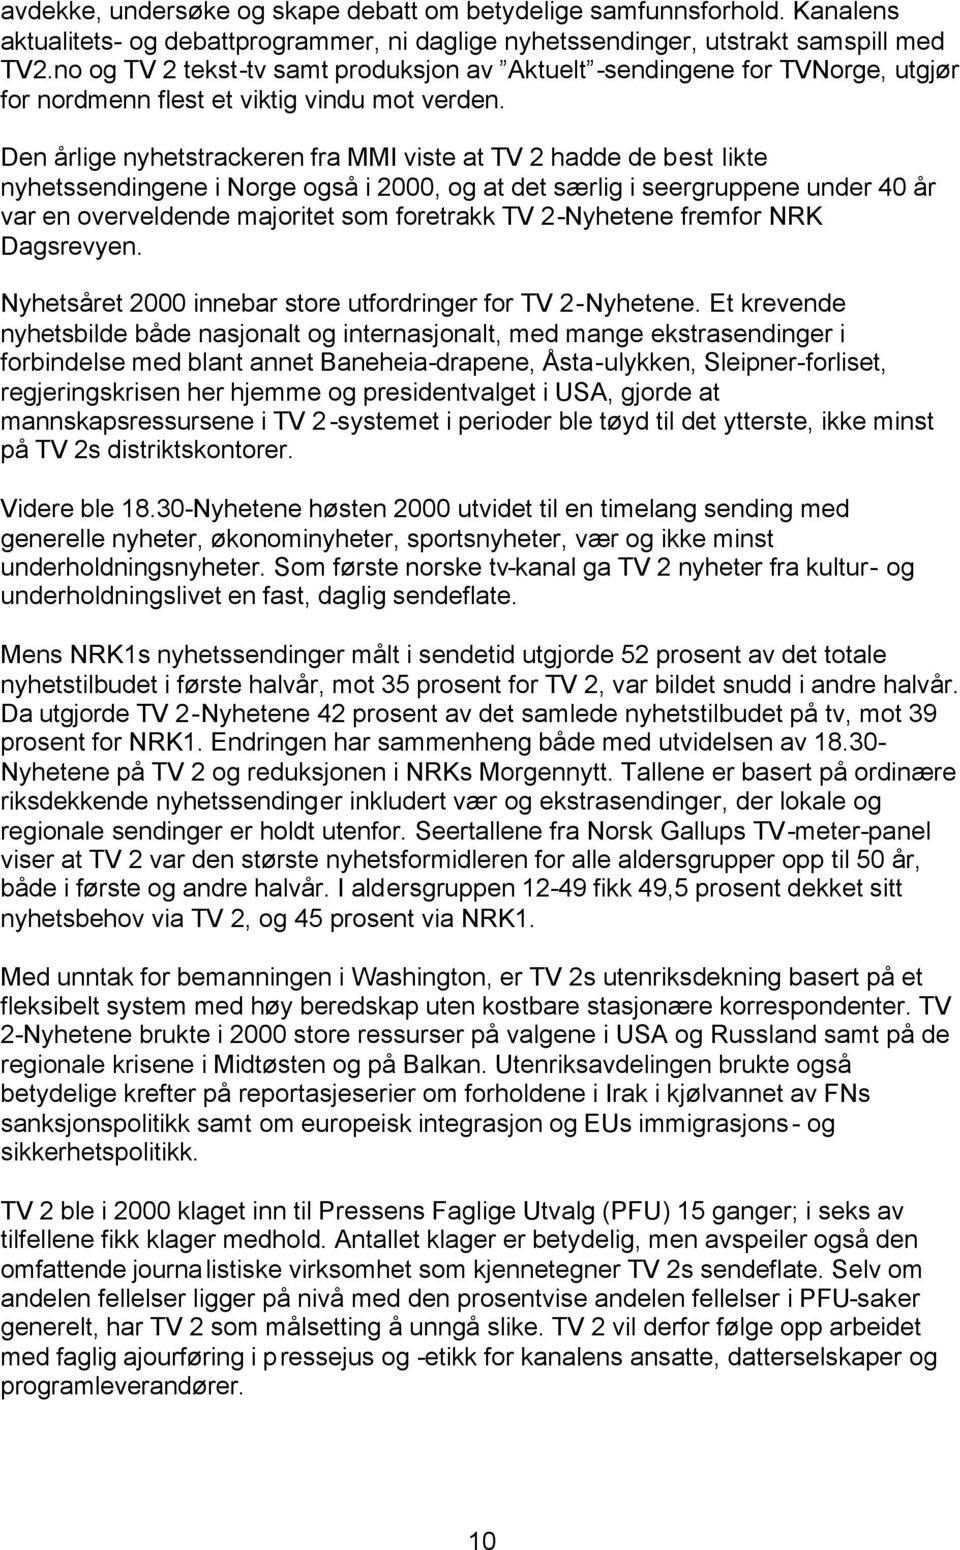 Den årlige nyhetstrackeren fra MMI viste at TV 2 hadde de best likte nyhetssendingene i Norge også i 2000, og at det særlig i seergruppene under 40 år var en overveldende majoritet som foretrakk TV